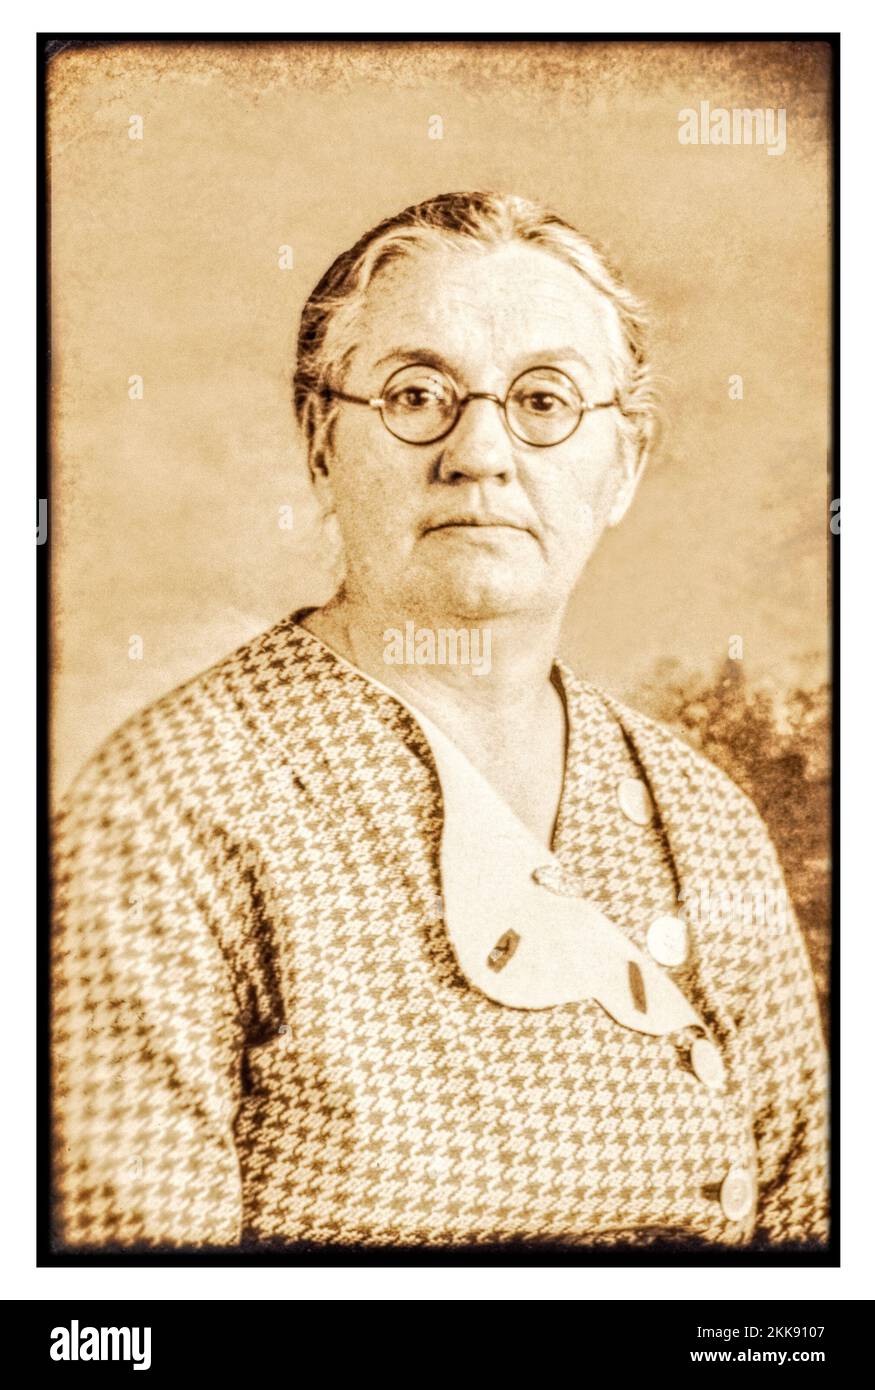 Die Großmutter des Fotografen, die Mitte bis Ende 1950er starb. Vintage-Sepia-Ton 1930er formelles Porträt einer Dame mittleren Alters. Stockfoto